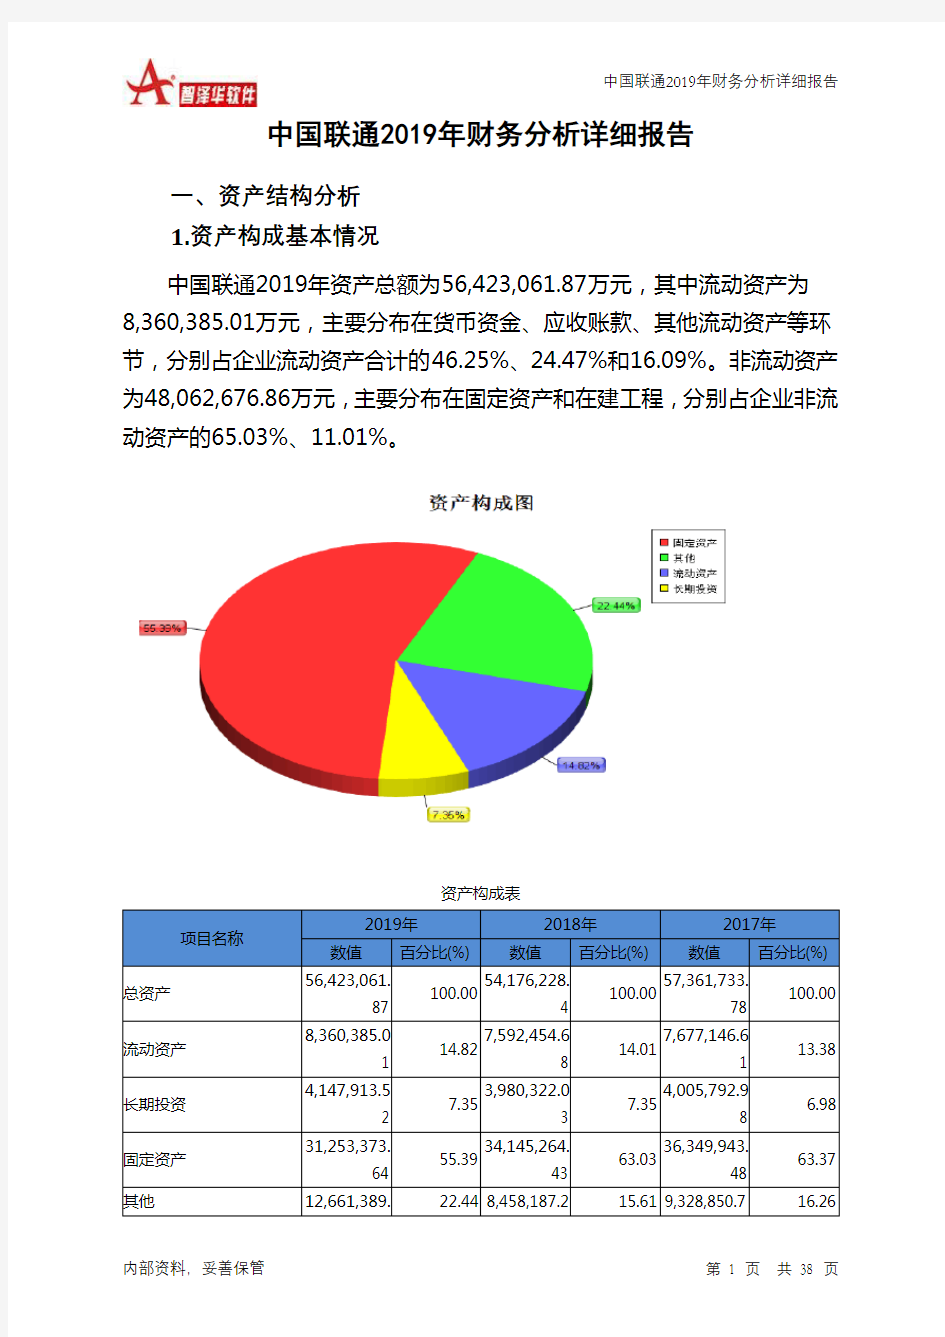 中国联通2019年财务分析详细报告